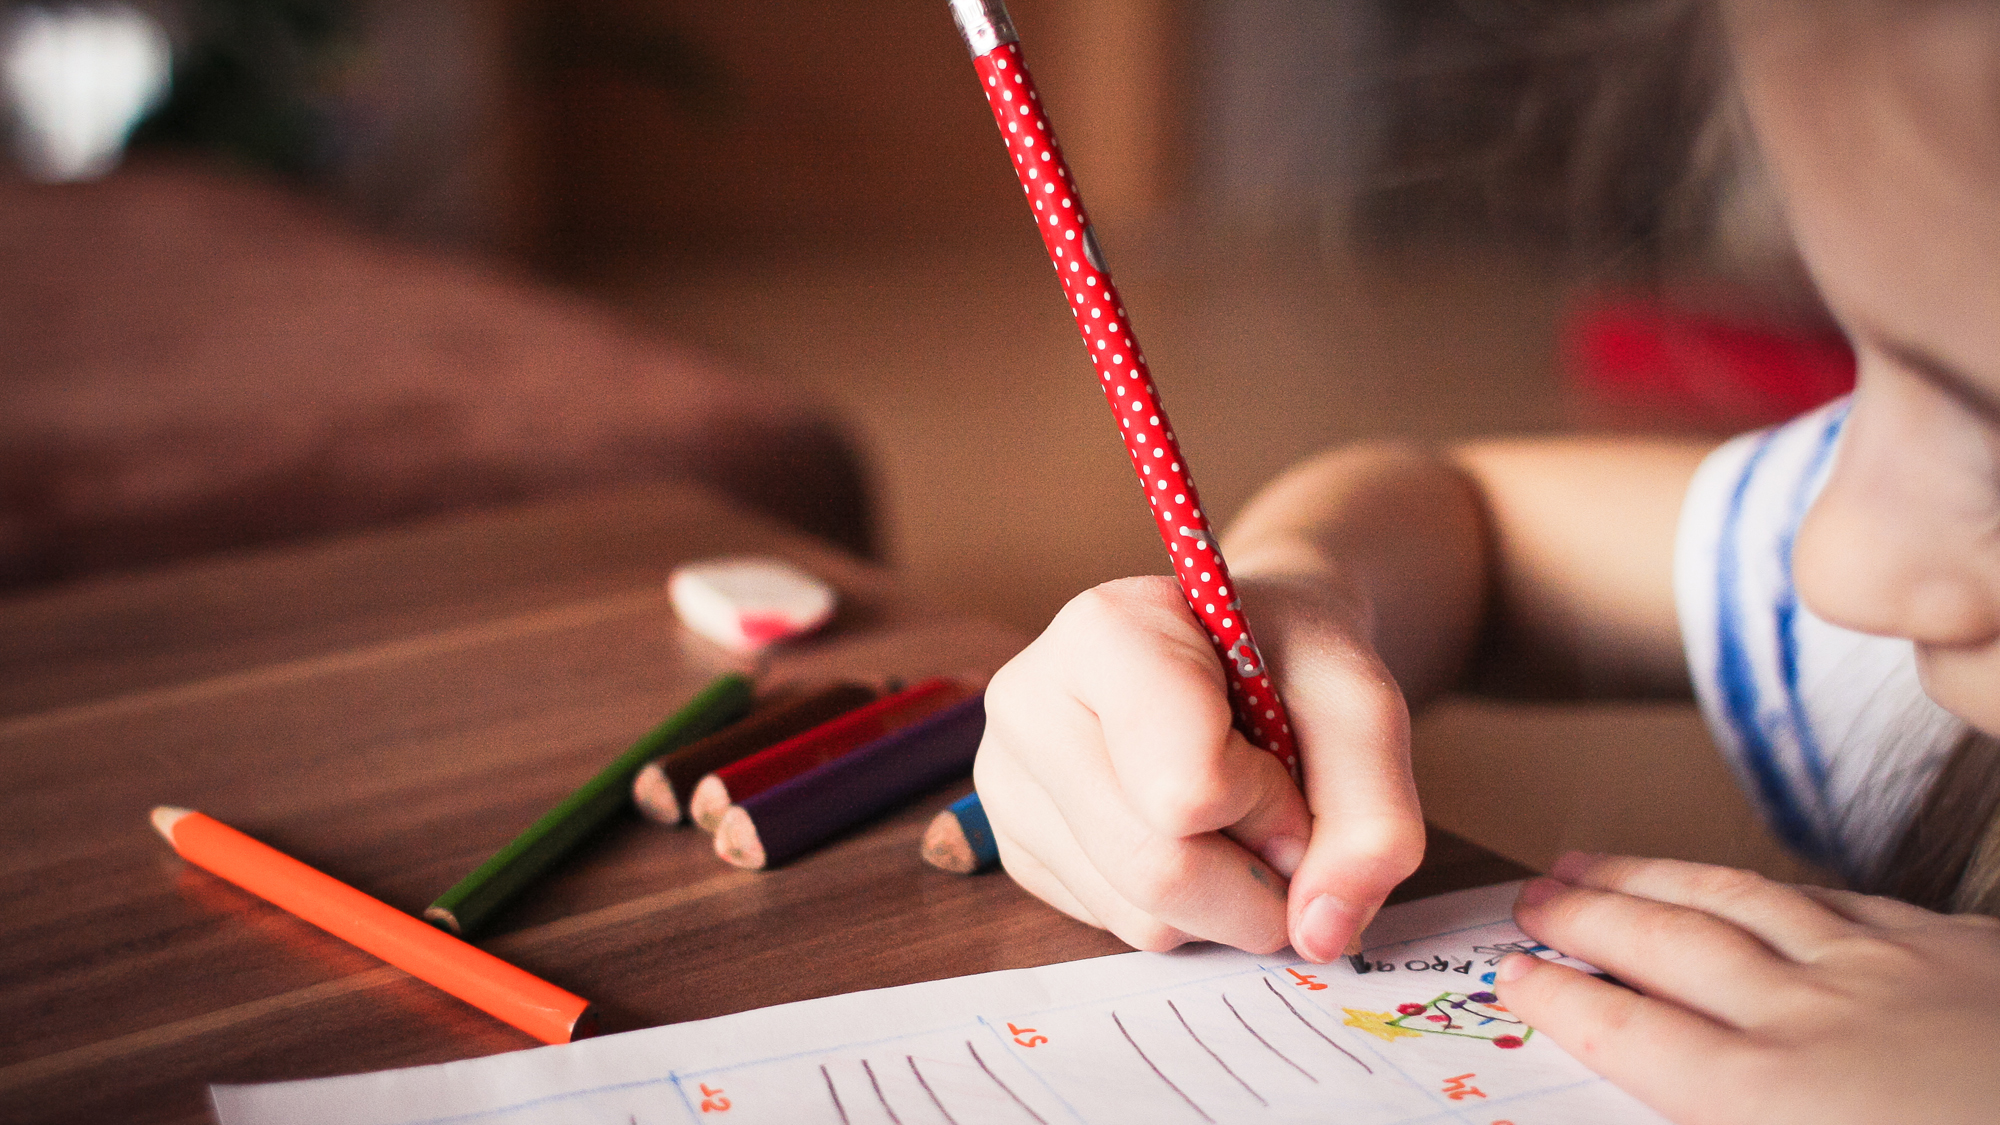 Kind füllt mit Bleistift einen Bogen aus.